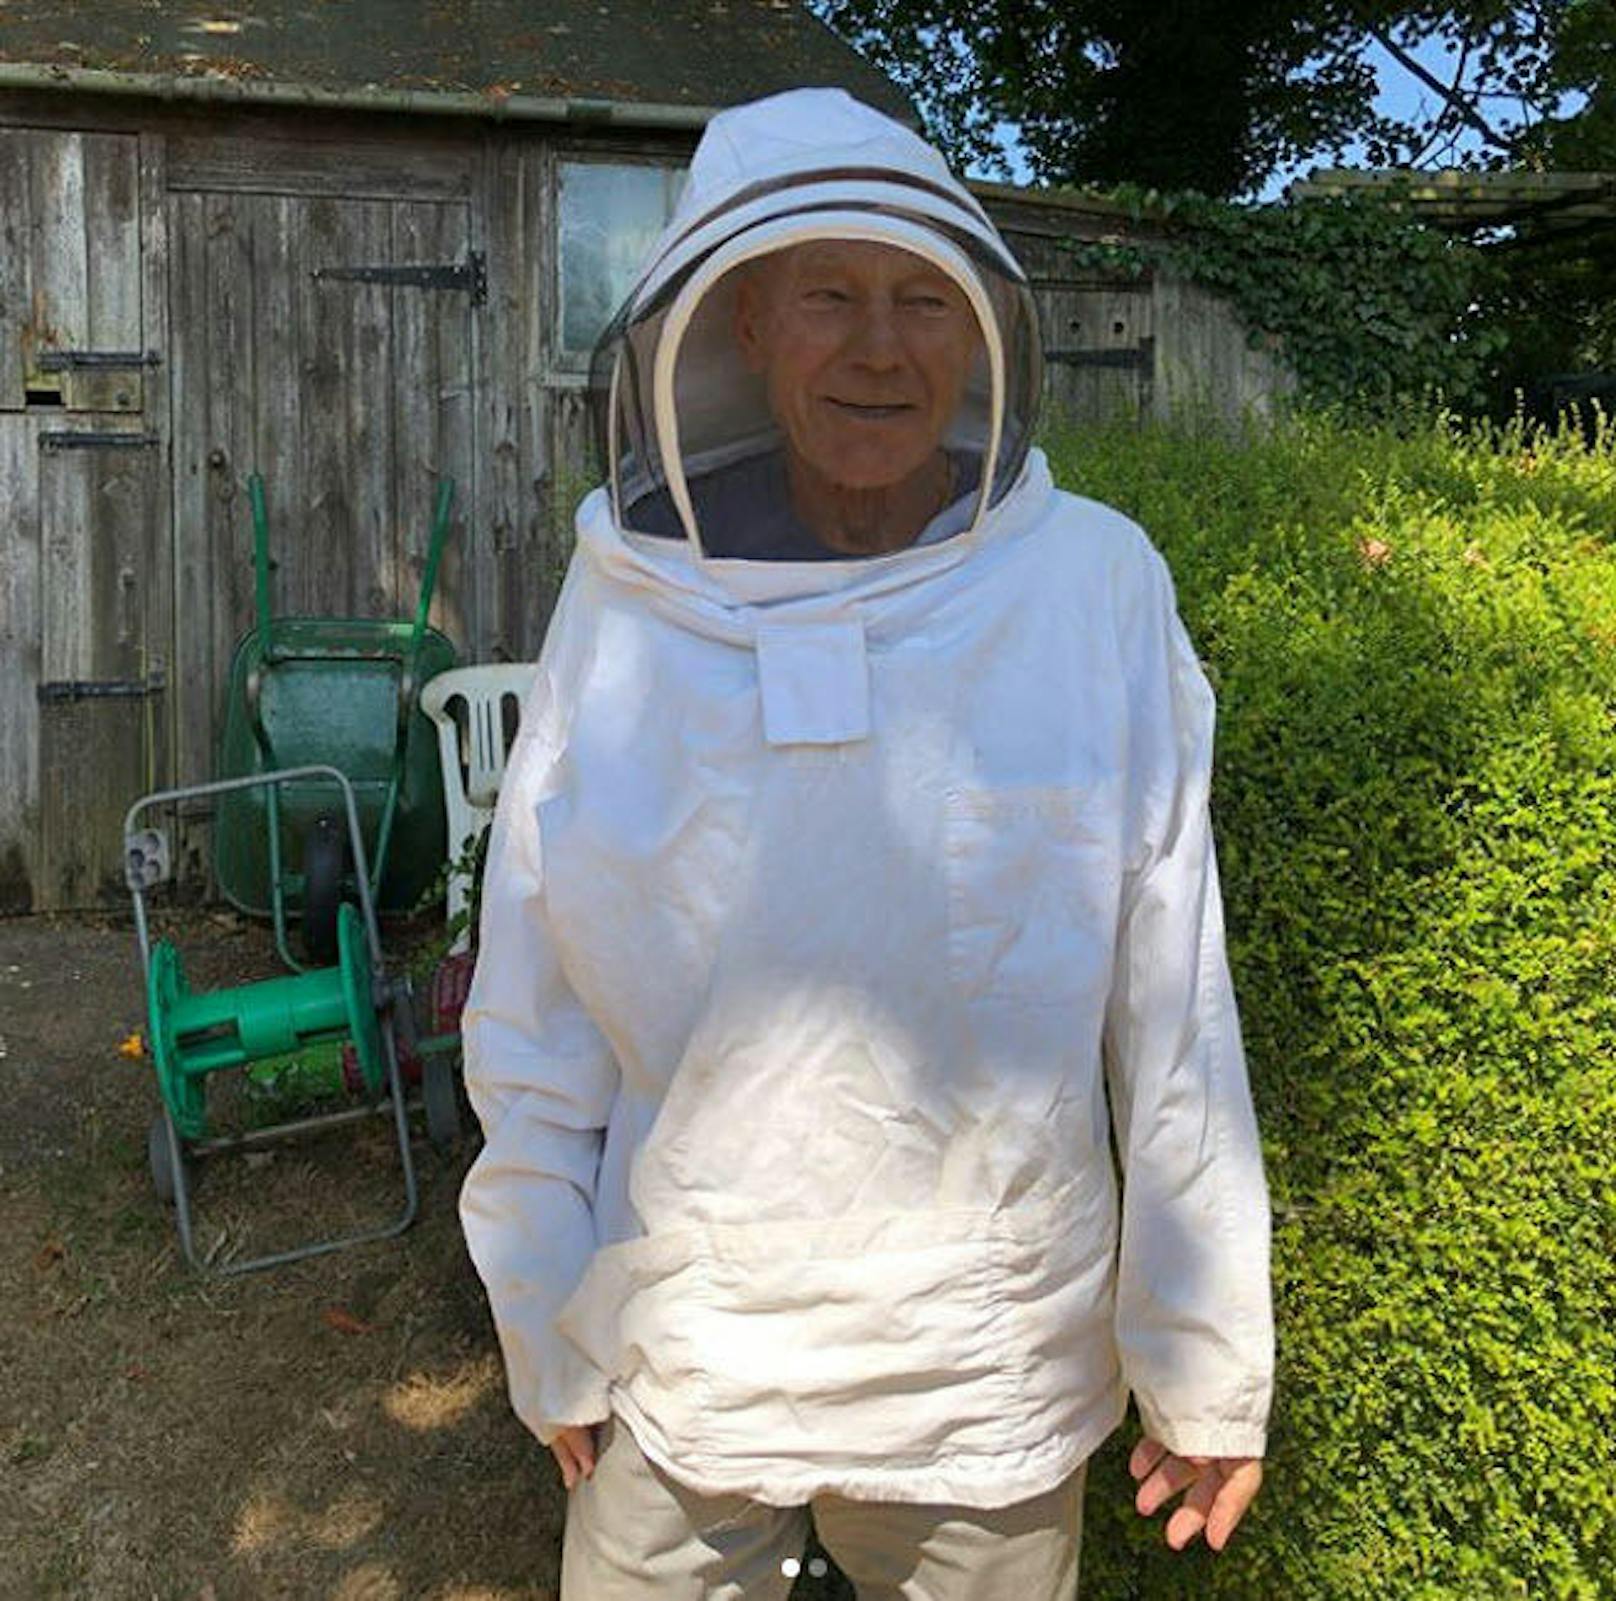 17.07.2018: Patrick Stewart erfüllt sich einen Lebenstraum und züchtet Bienen. Hashtag? BeeStew!